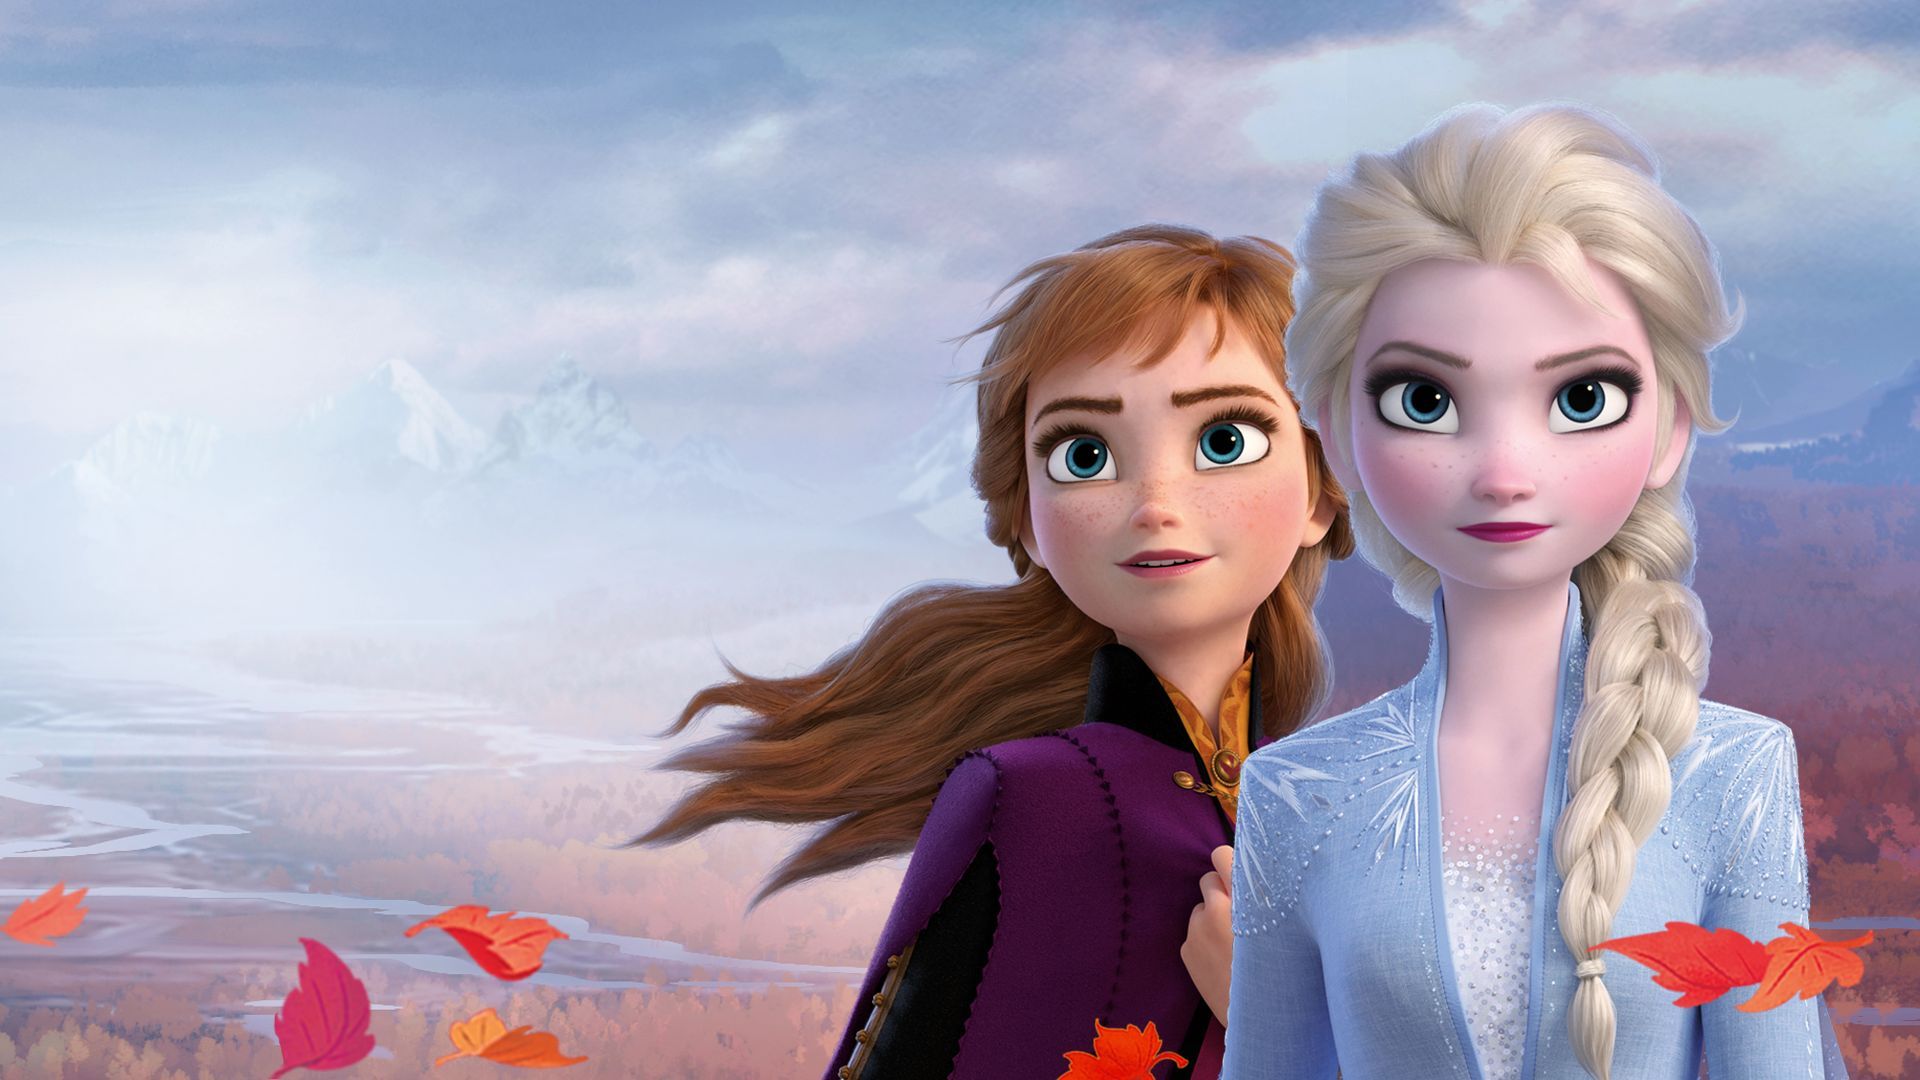 Why Jordan Peterson Thinks 'Frozen' Is Propaganda